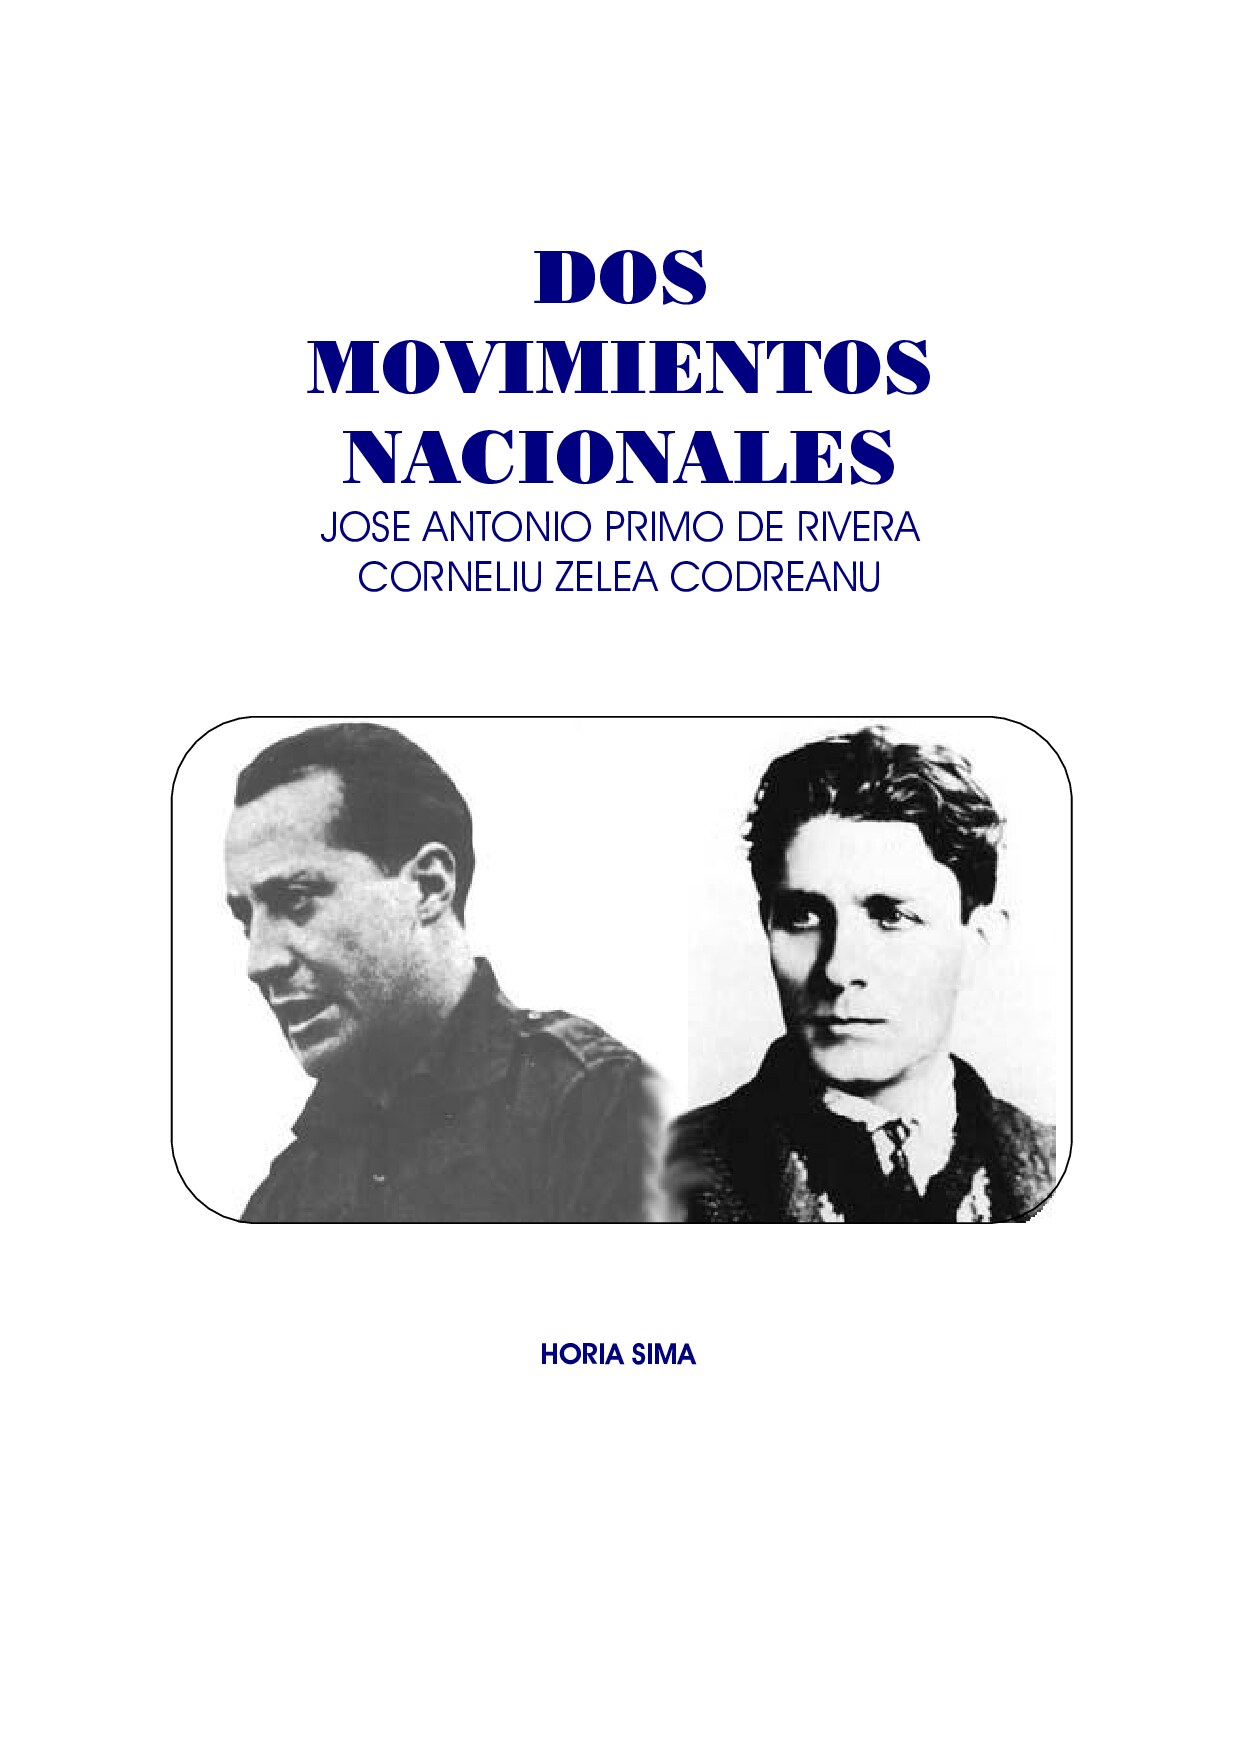 Microsoft Word - [Libro] Horia Sima - Dos Movimientos Nacionales.doc